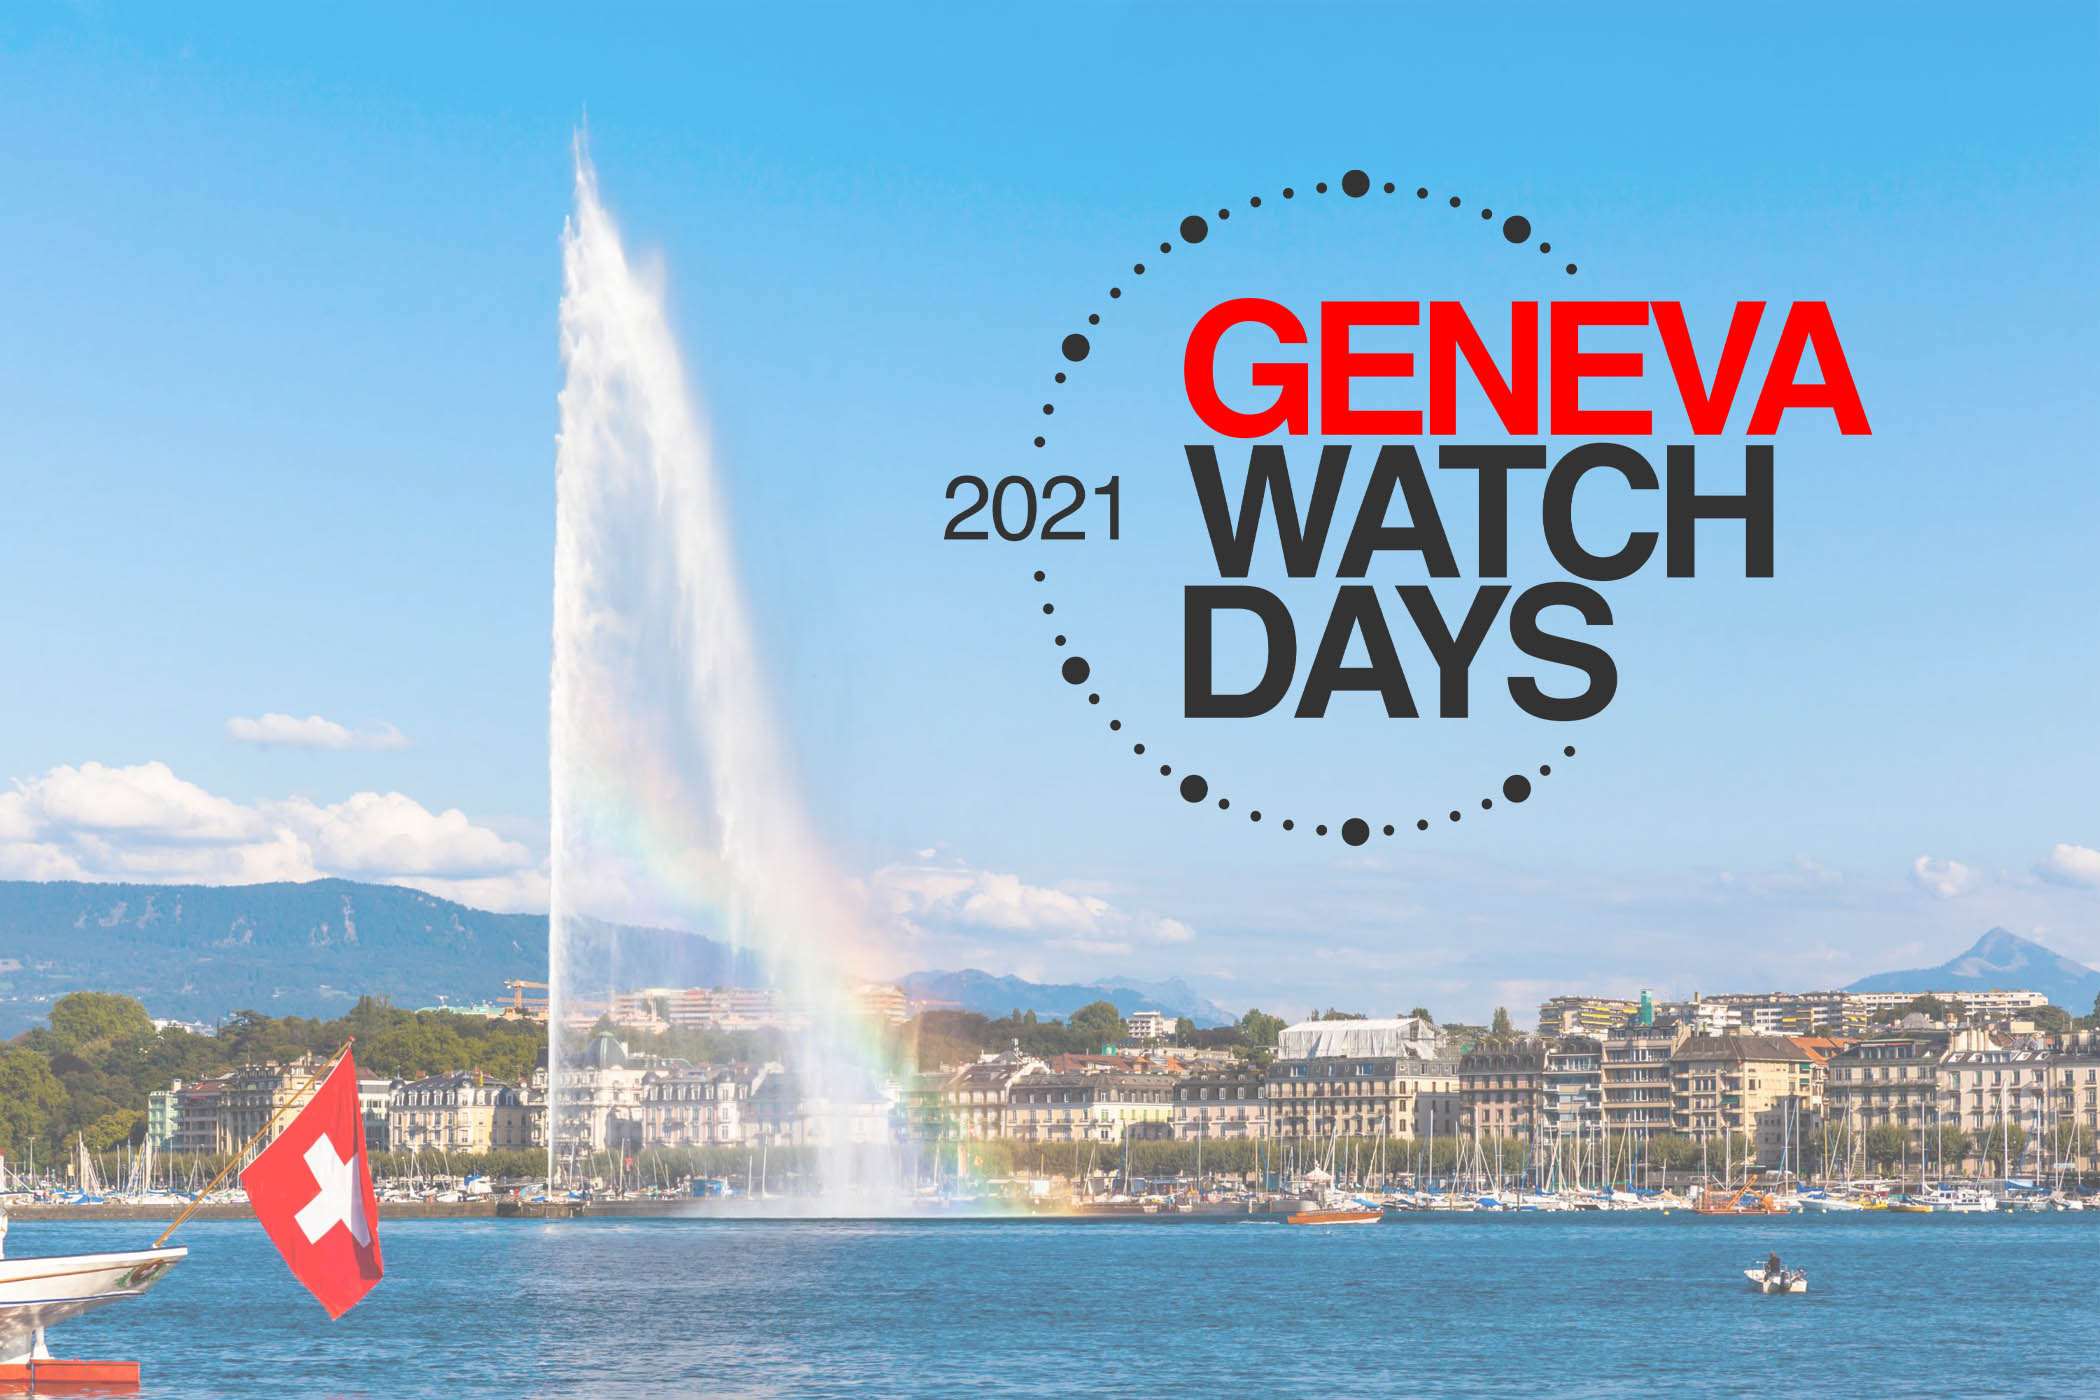 Geneva Watch Days 2021 announcement